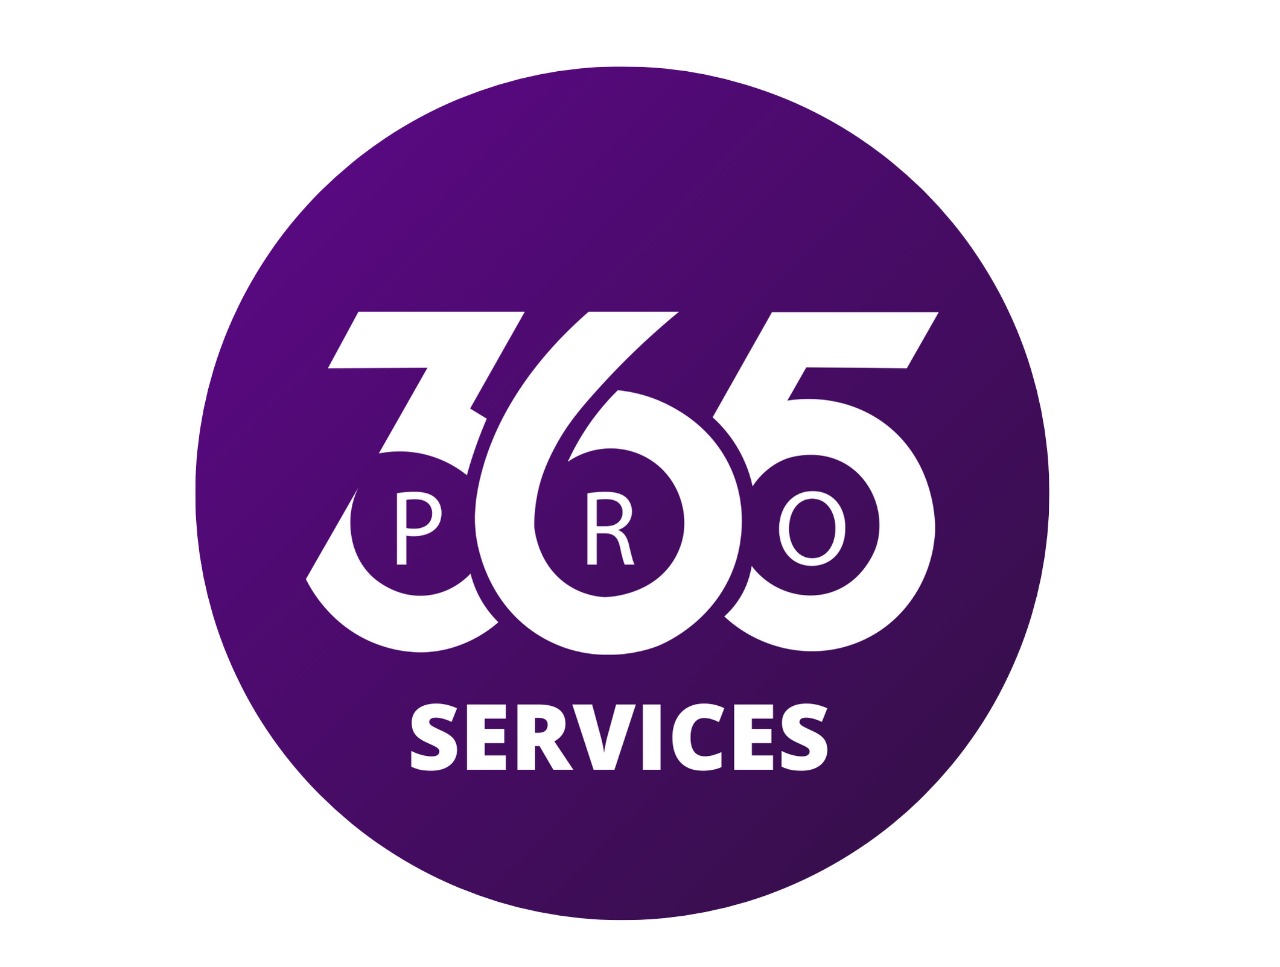 365 pro services